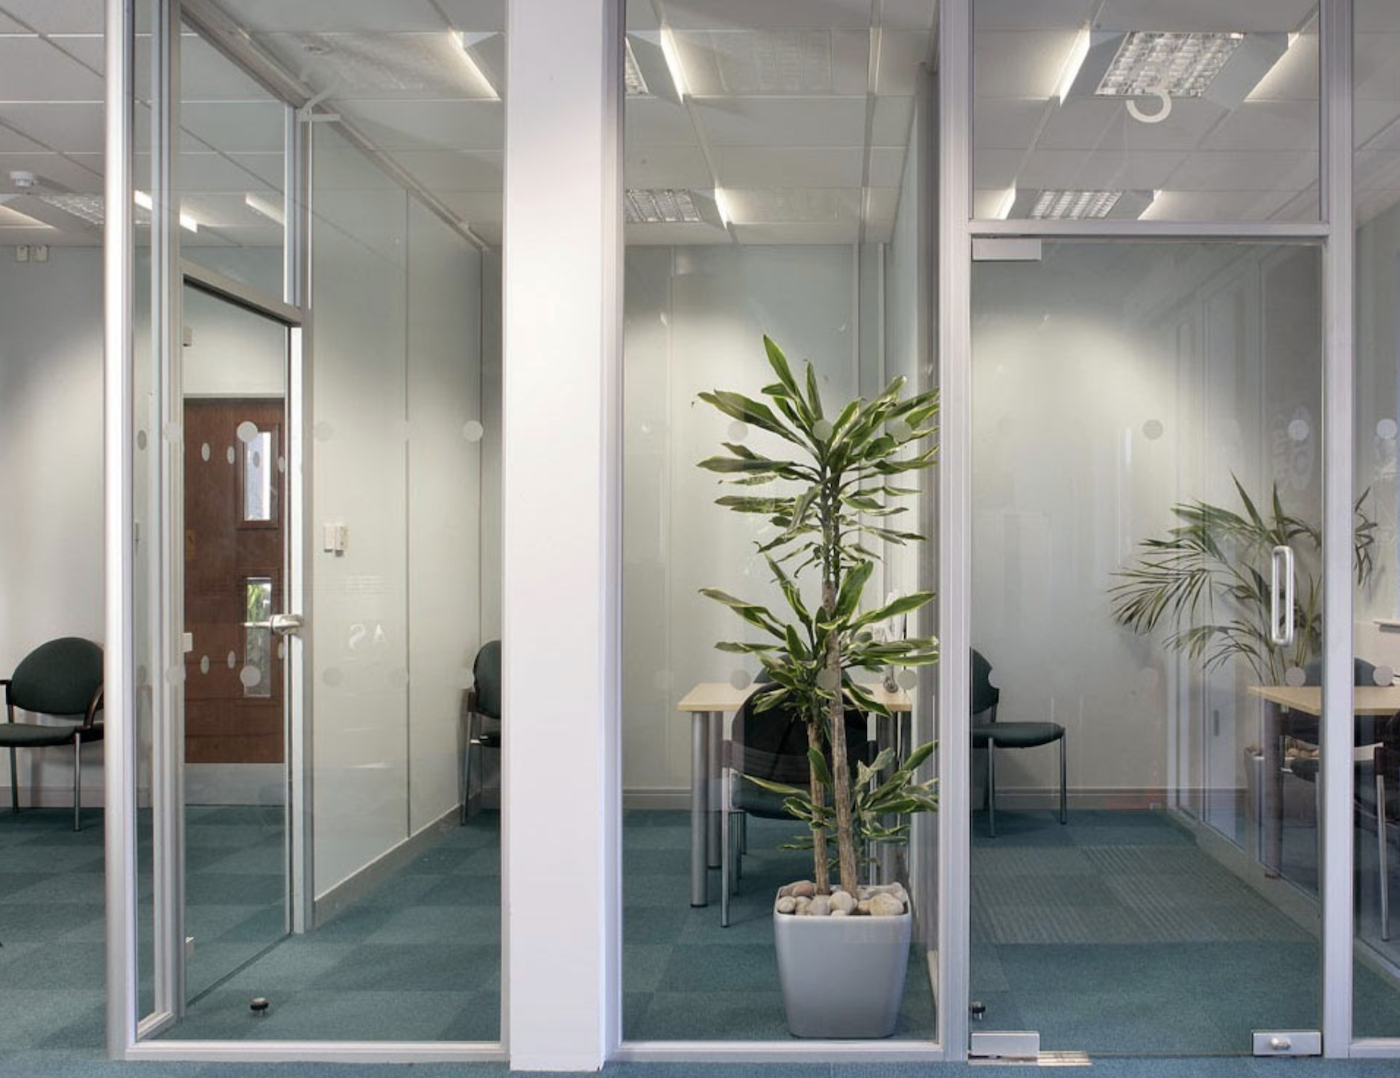 Pivot frameless swing doors create a beautiful office door design